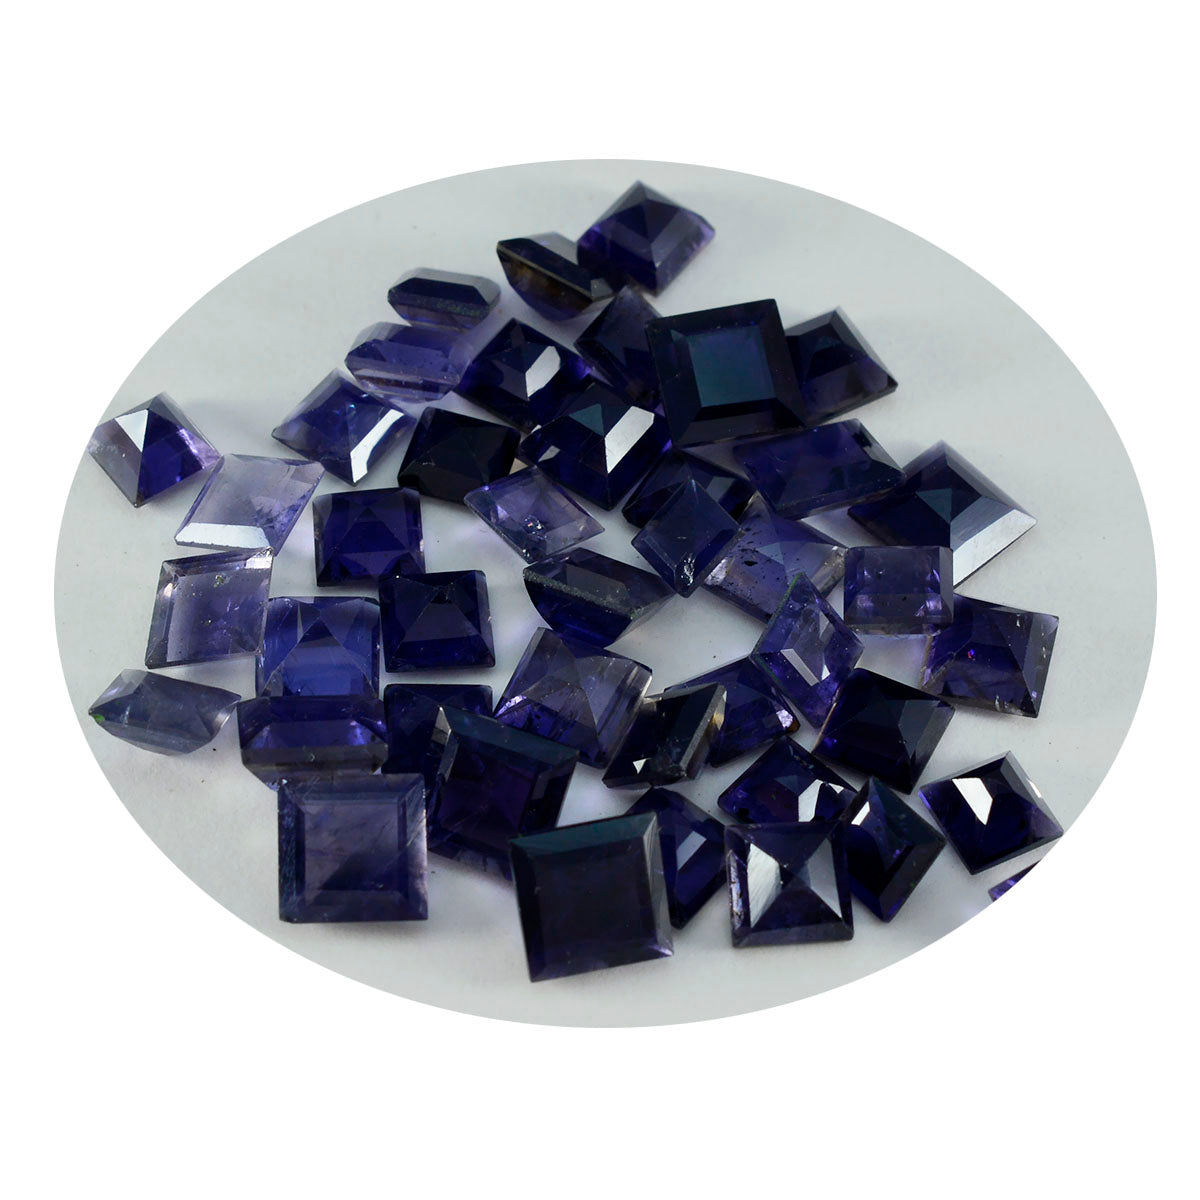 Riyogems 1 pièce d'iolite bleue à facettes 9x9mm forme carrée a1 qualité pierres précieuses en vrac